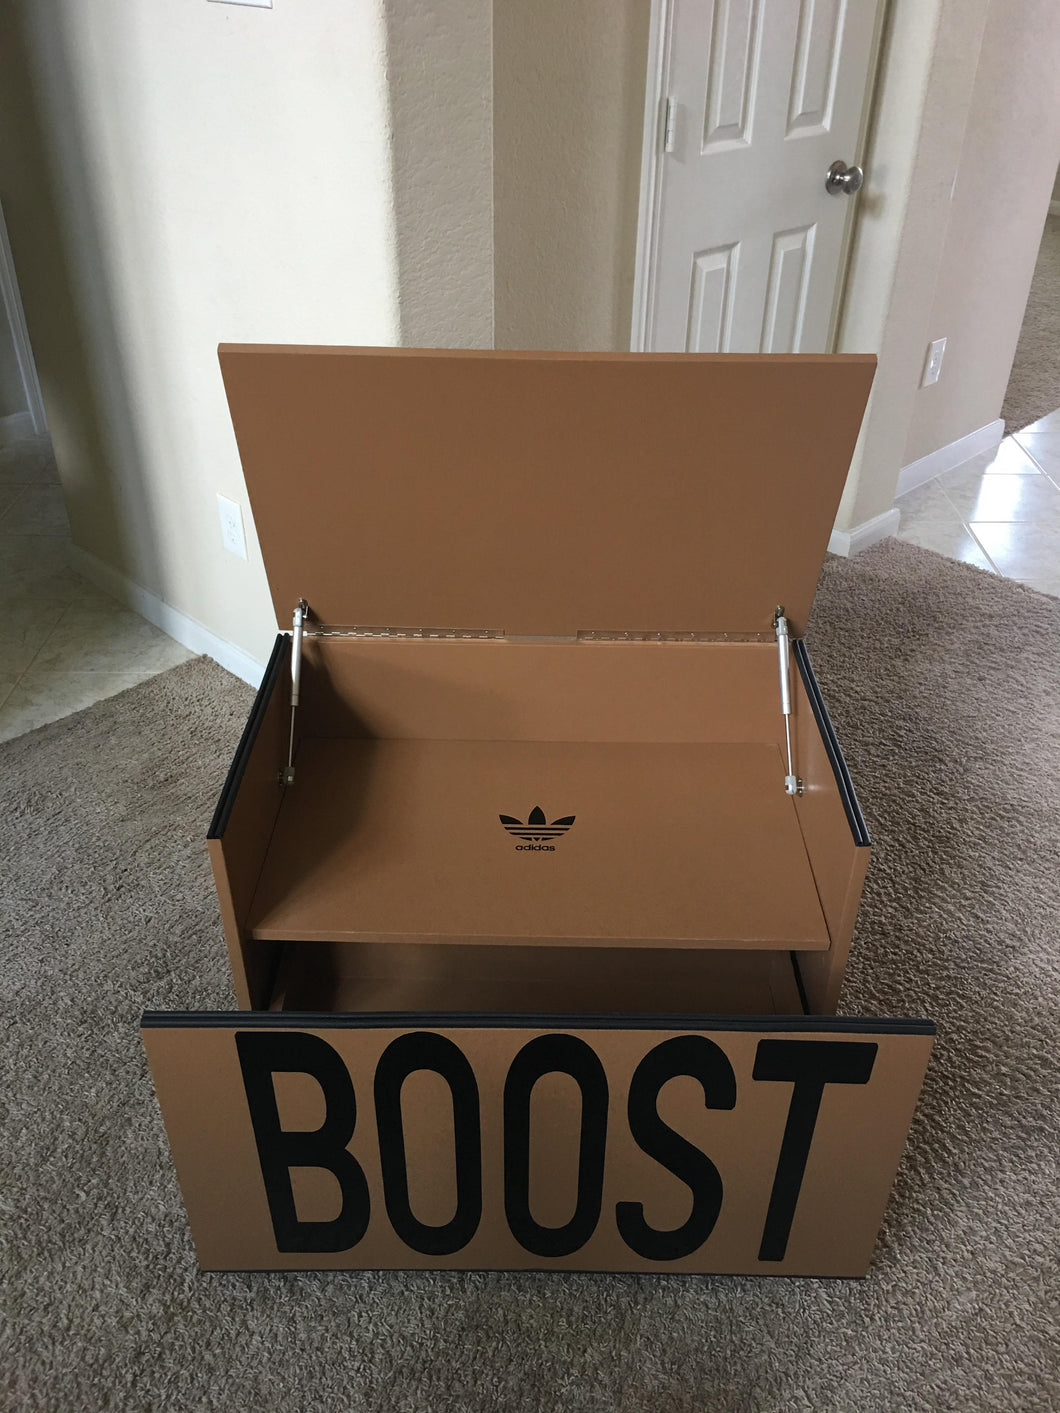 yeezy shoe box